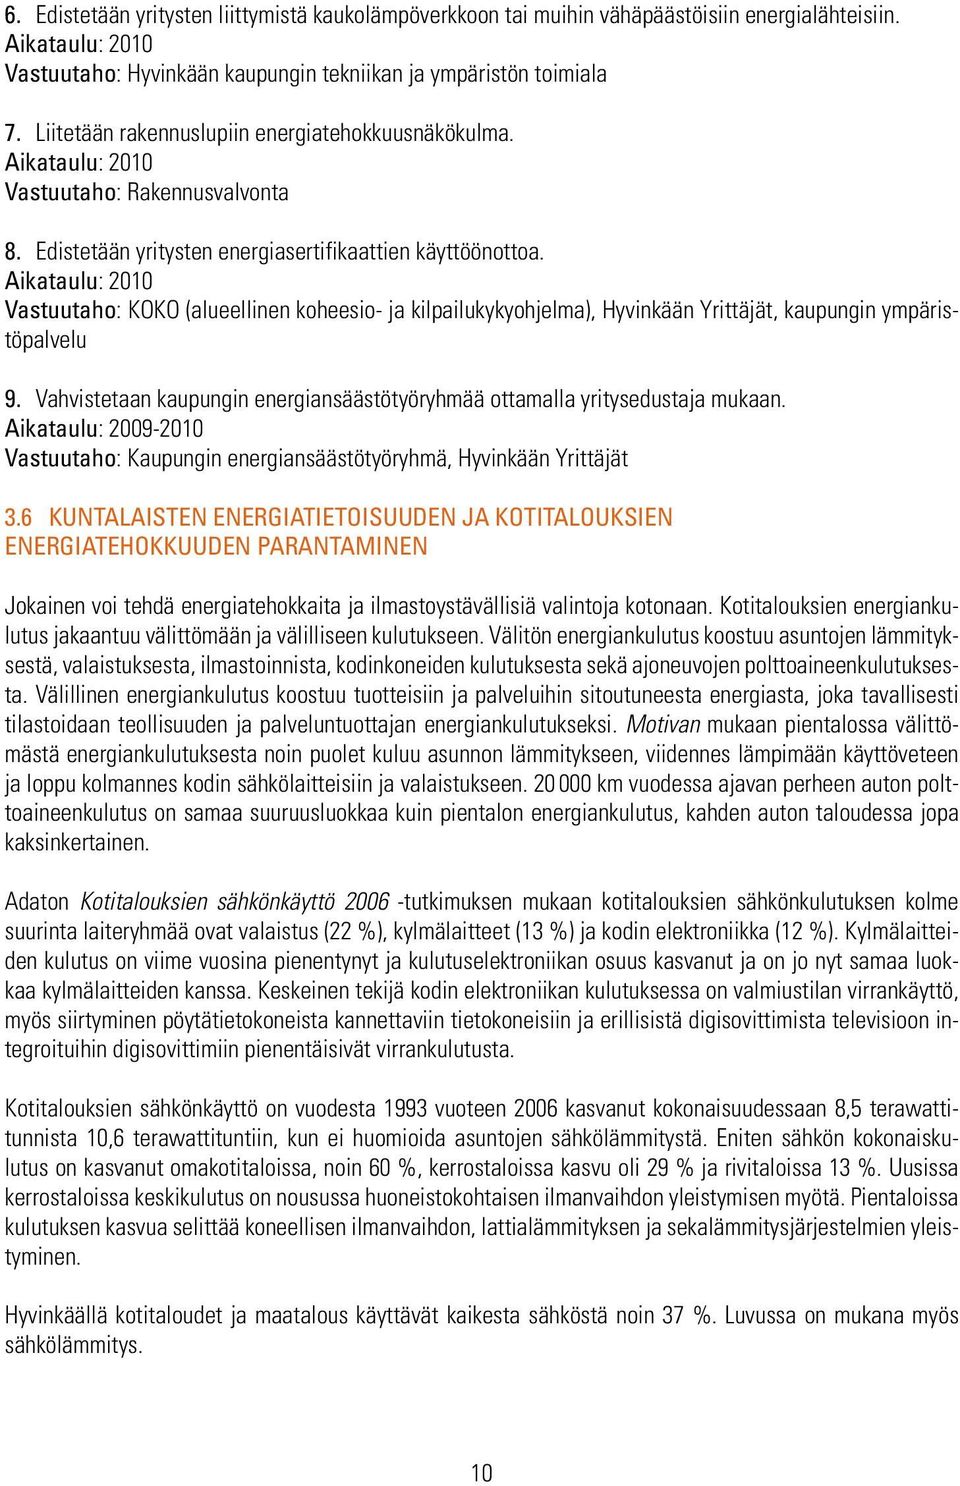 Aikataulu: 2010 Vastuutaho: KOKO (alueellinen koheesio- ja kilpailukykyohjelma), Hyvinkään Yrittäjät, kaupungin ympäristöpalvelu 9.